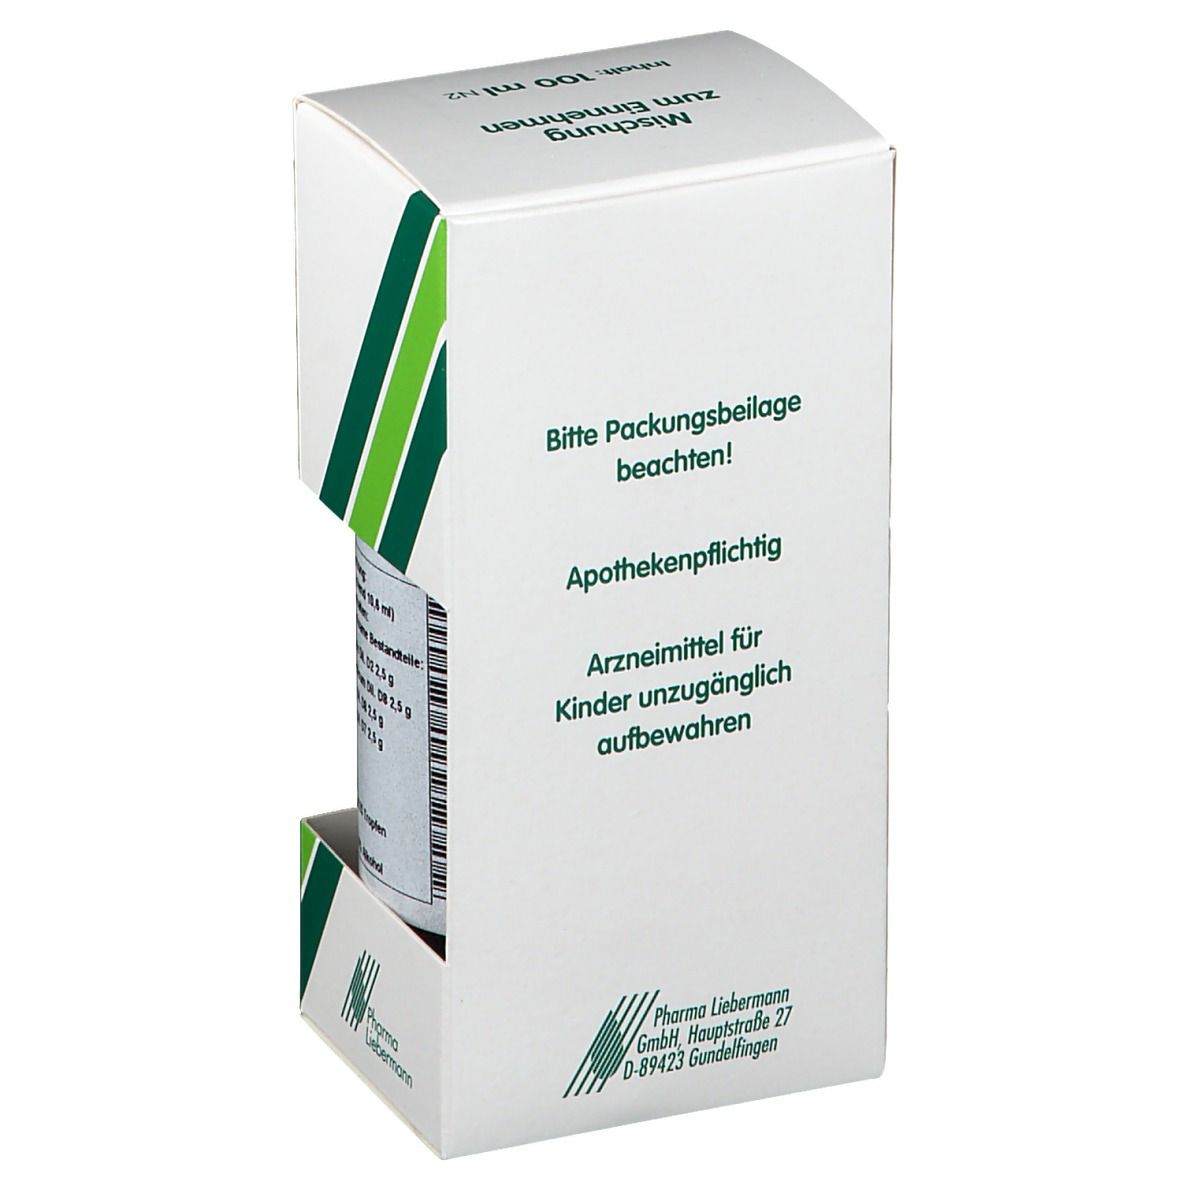 Delto-cyl® L Schulter-Complex Tropfen